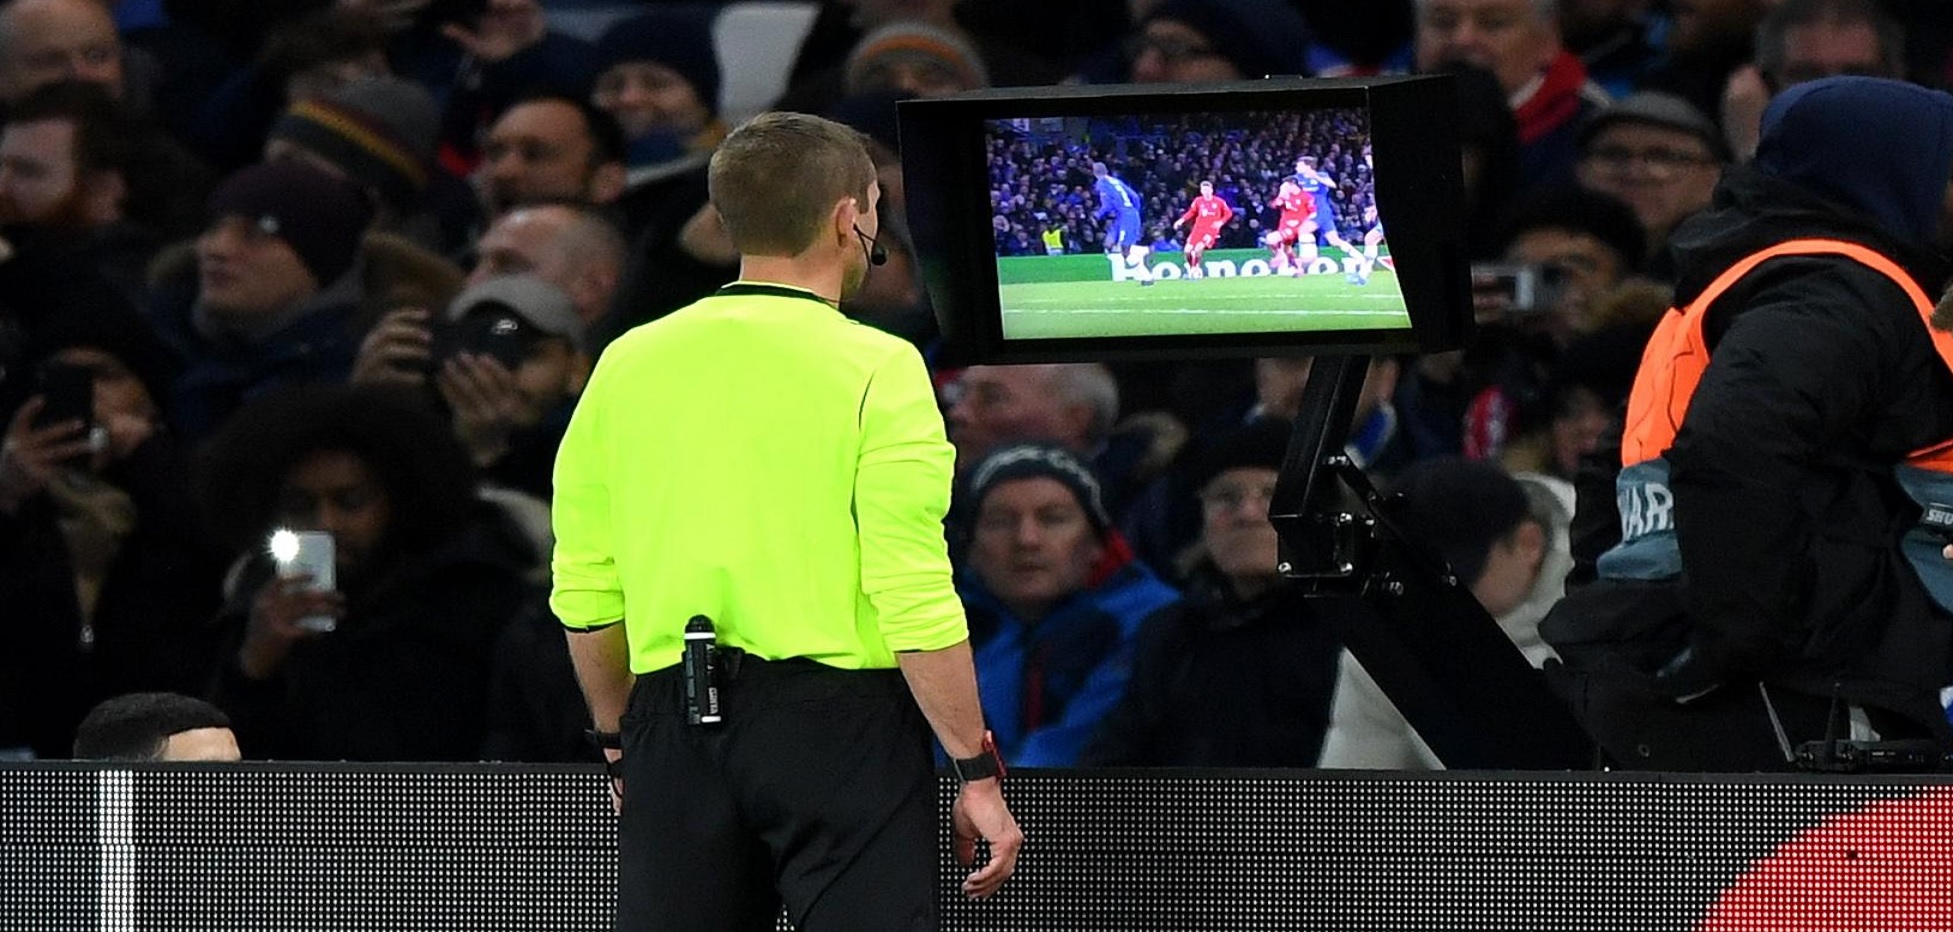 Una dintre cele mai inspirate decizii din lumea fotbalului: introducerea sistemului VAR (Video Assistant Referee)